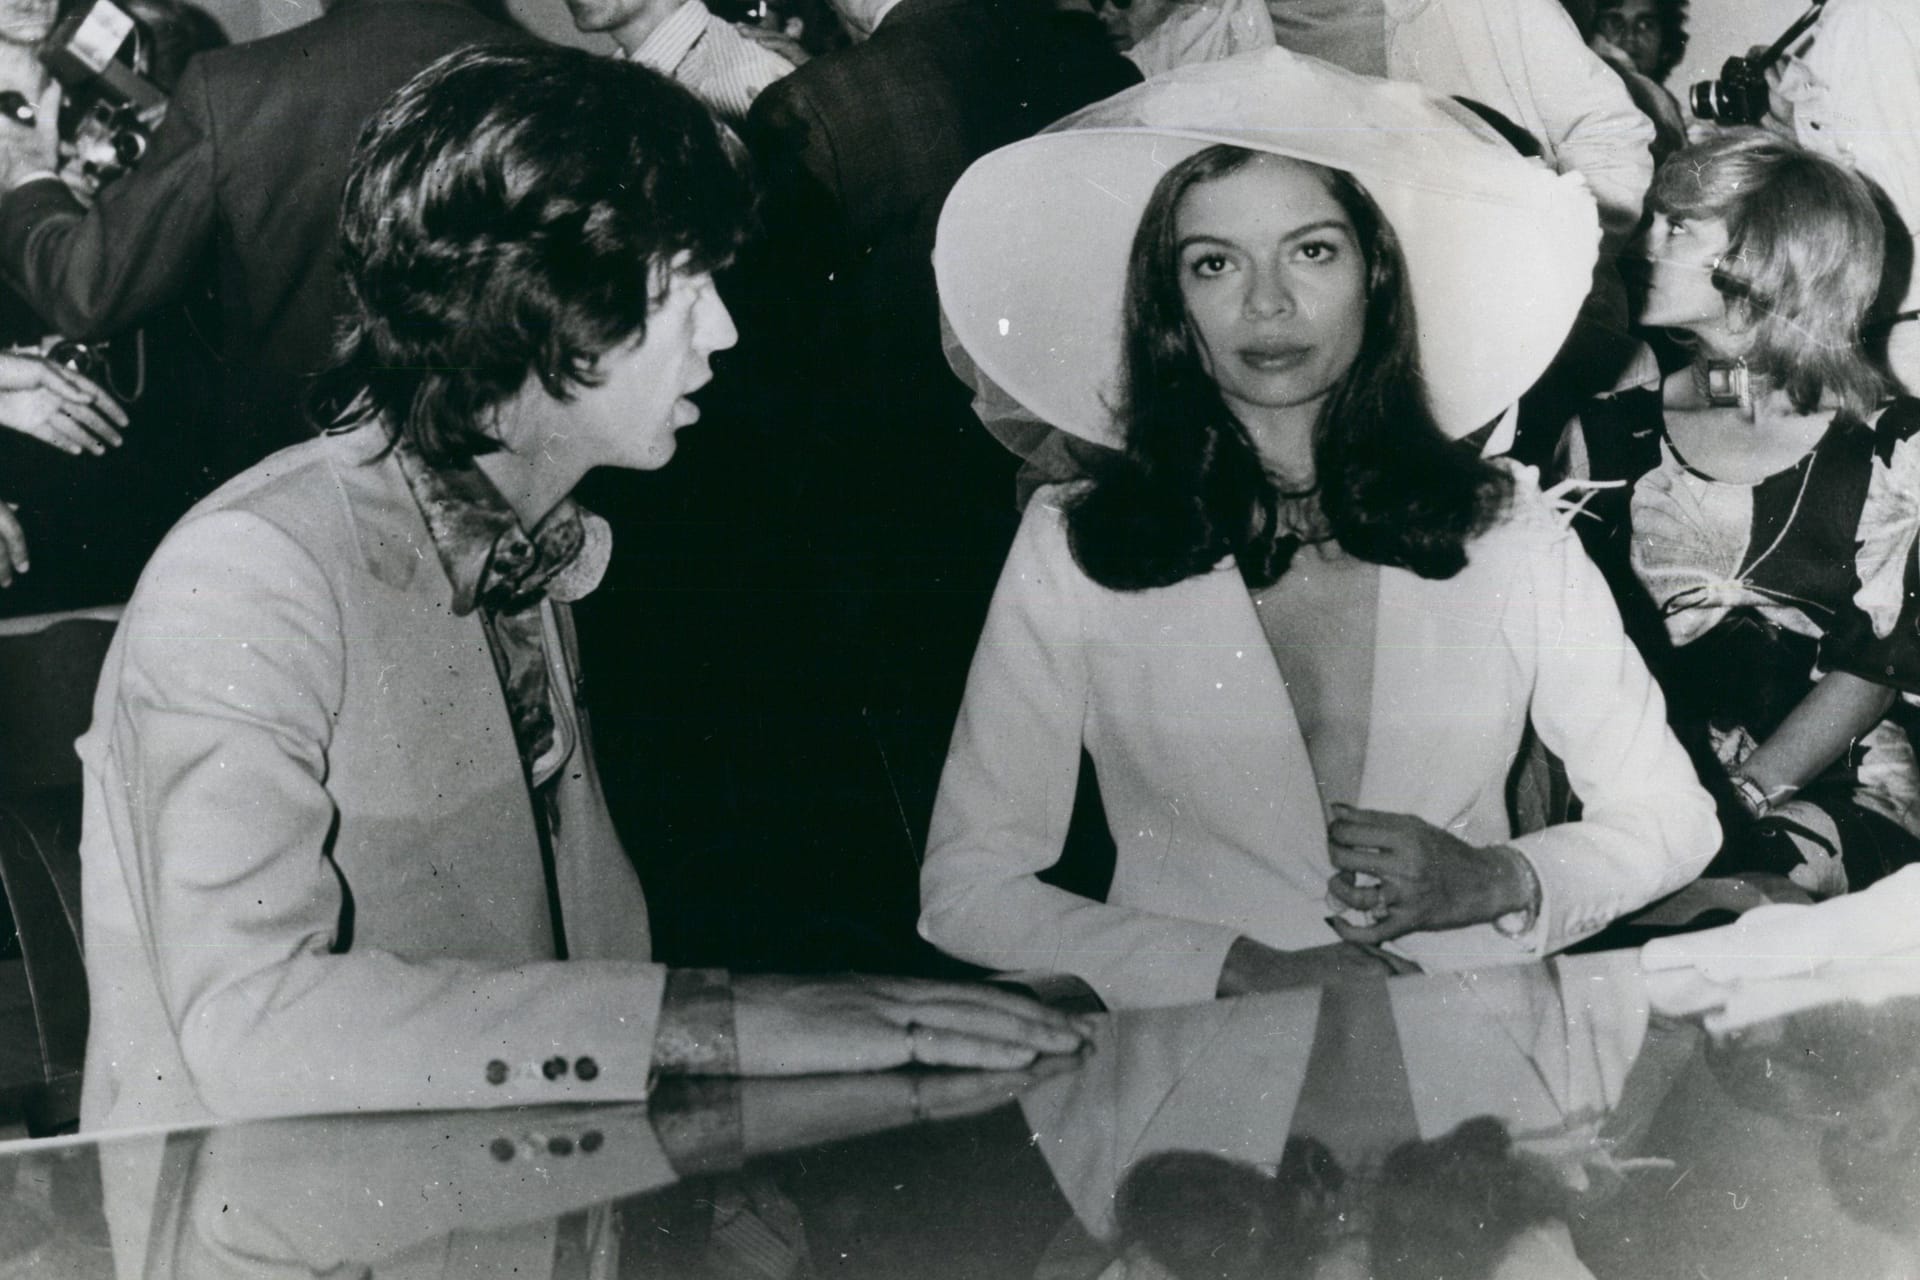 Bianca Pérez-Mora Macías: Ein Jahr später trat Mick Jagger erstmals vor den Altar. Kurz darauf wurde Jade Jagger geboren. Die beiden waren insgesamt sieben Jahre lang verheiratet. Ein Grund für die Trennung soll seine zweite Ehefrau Jerry Hall gewesen.